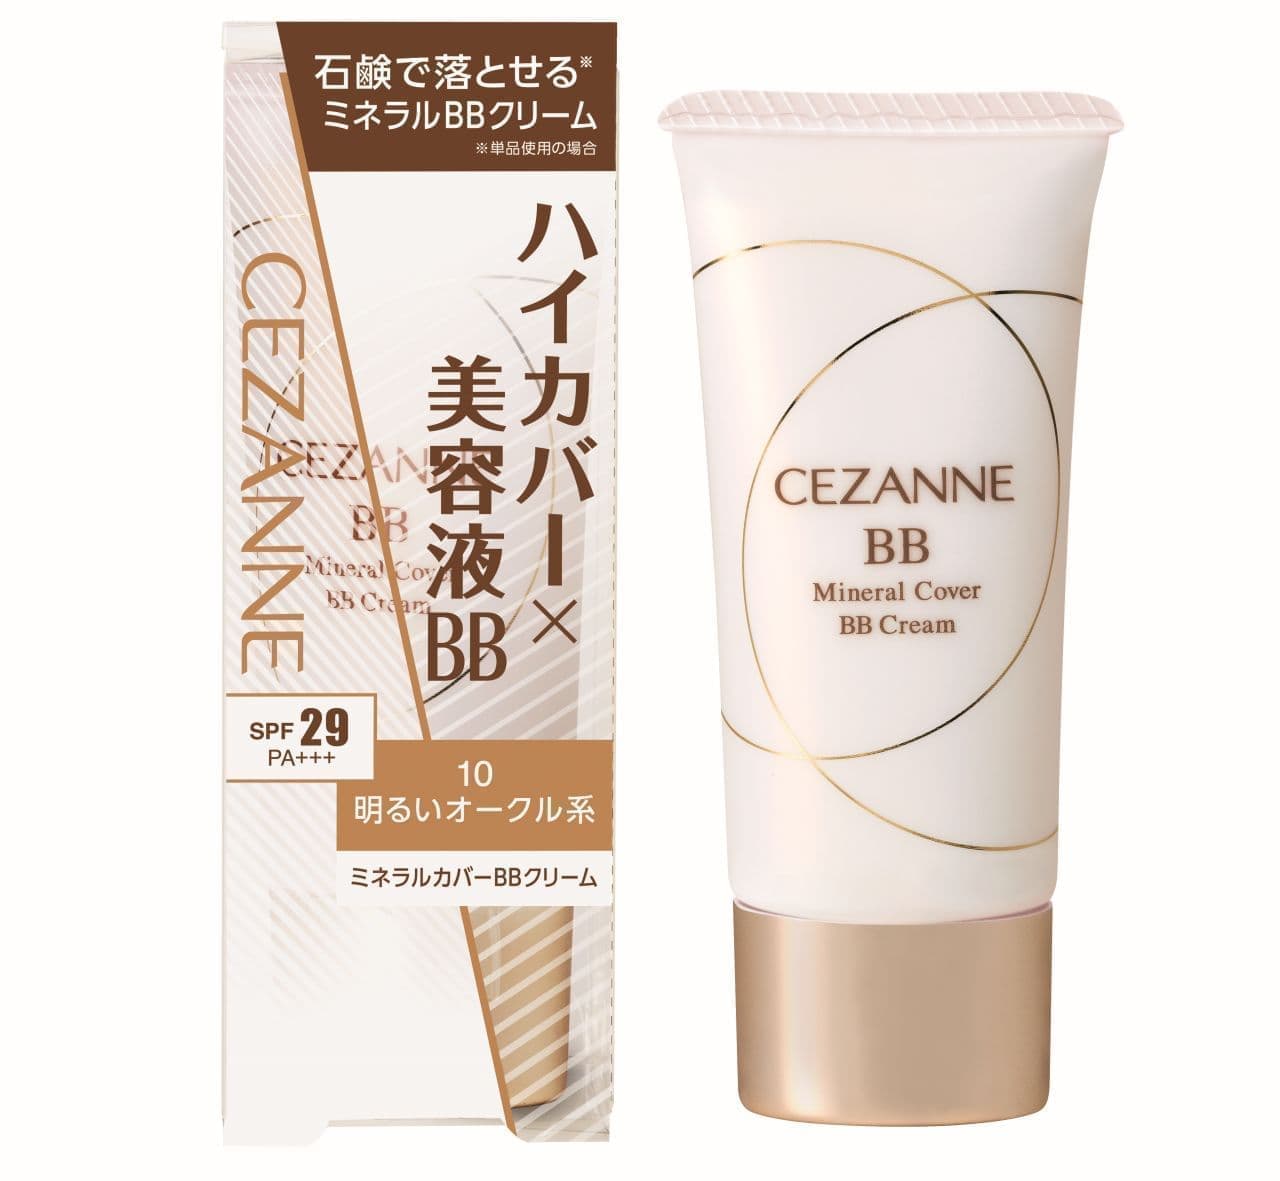 Sezanne "Mineral Cover BB Cream